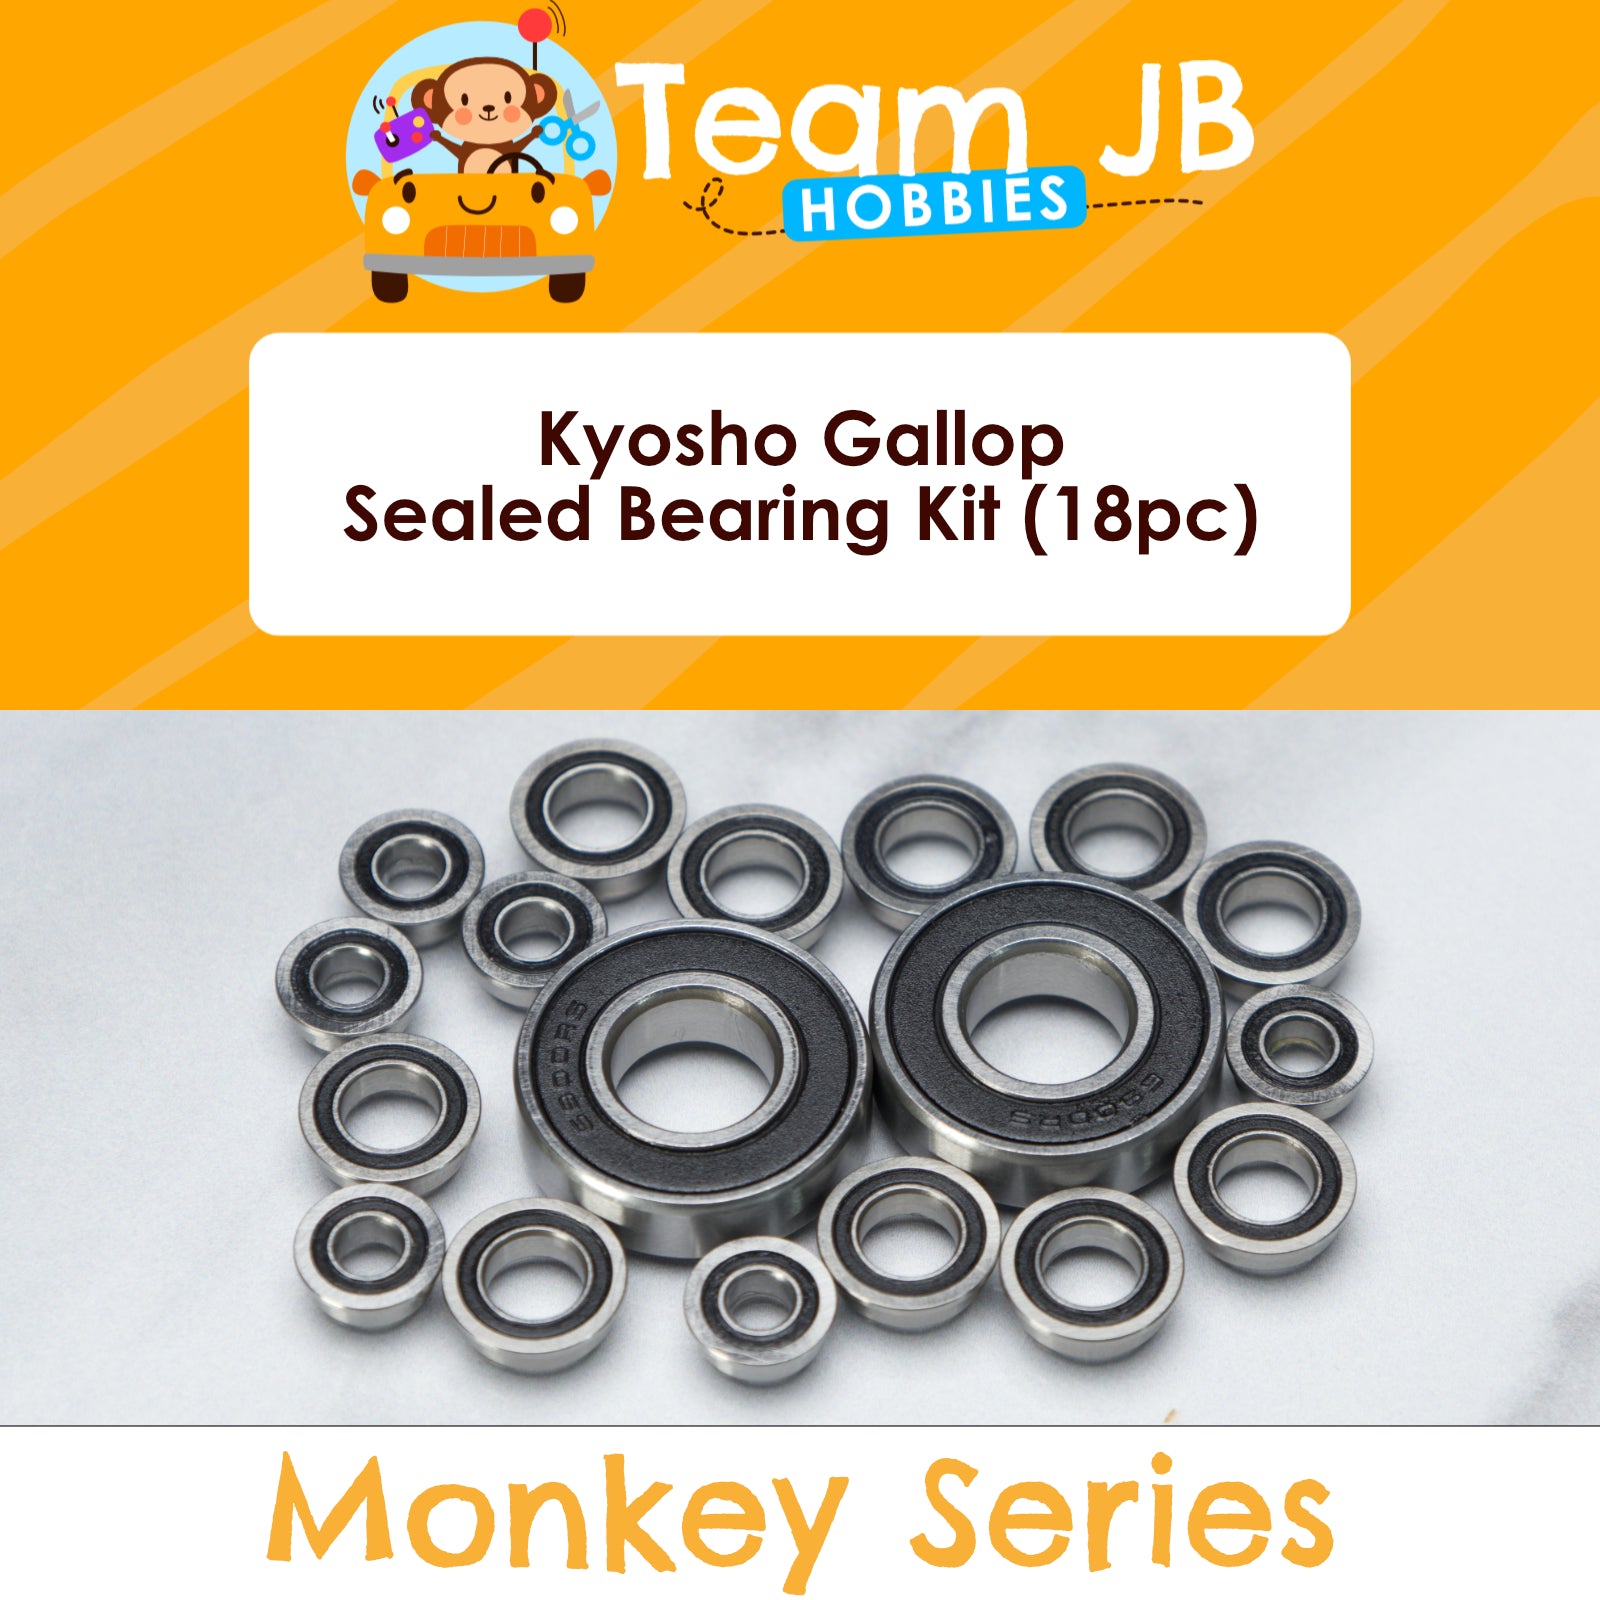 Kyosho Gallop - Sealed Bearing Kit